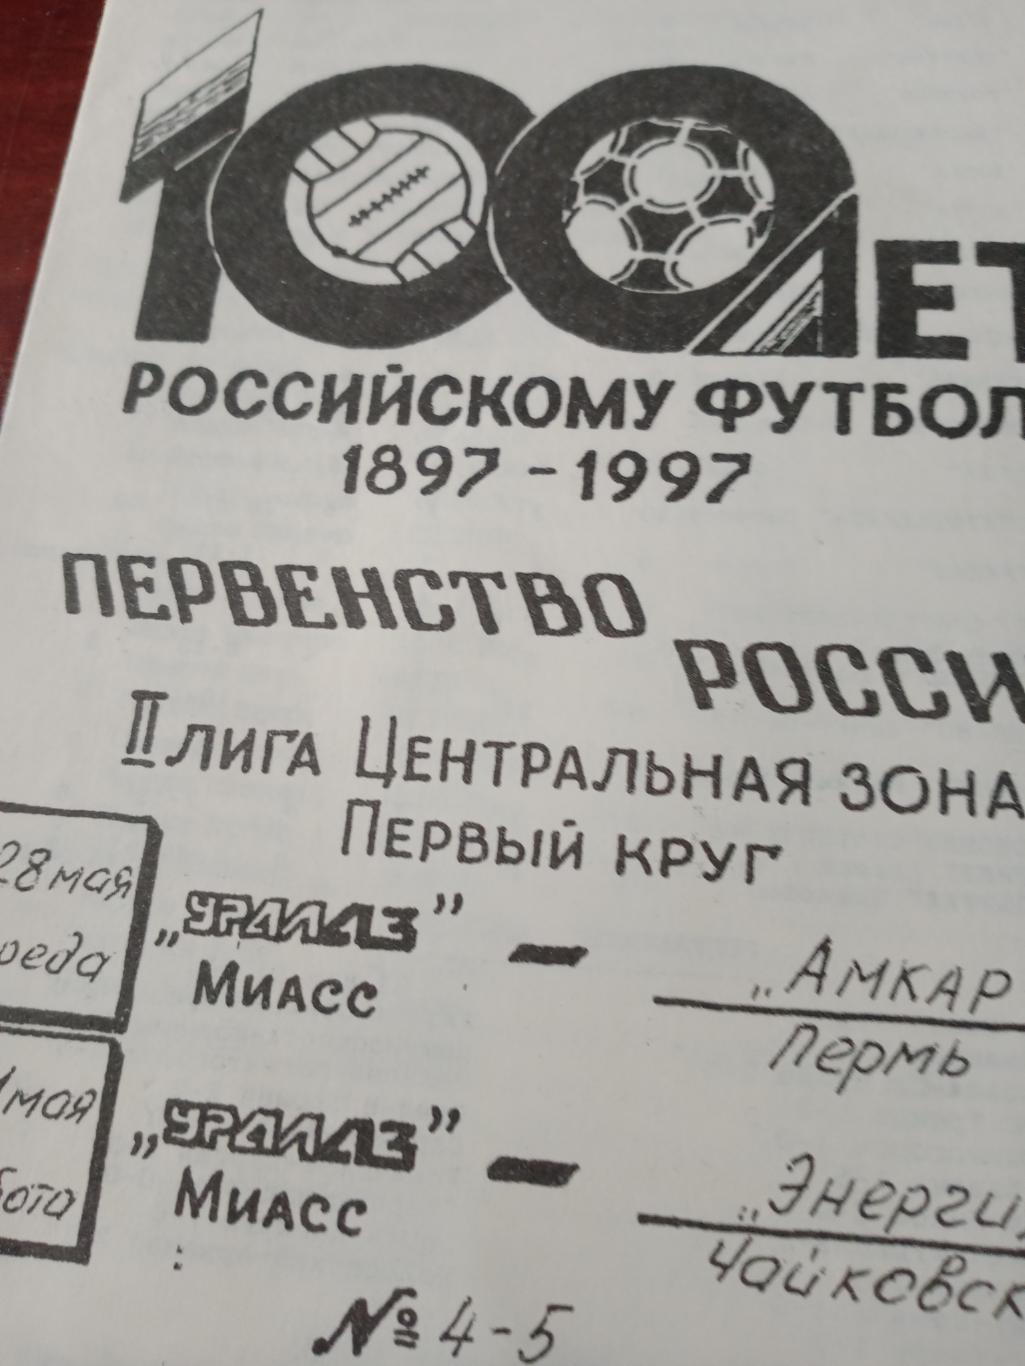 УралАЗ Миасс в сезоне-97. программка на 2 матча